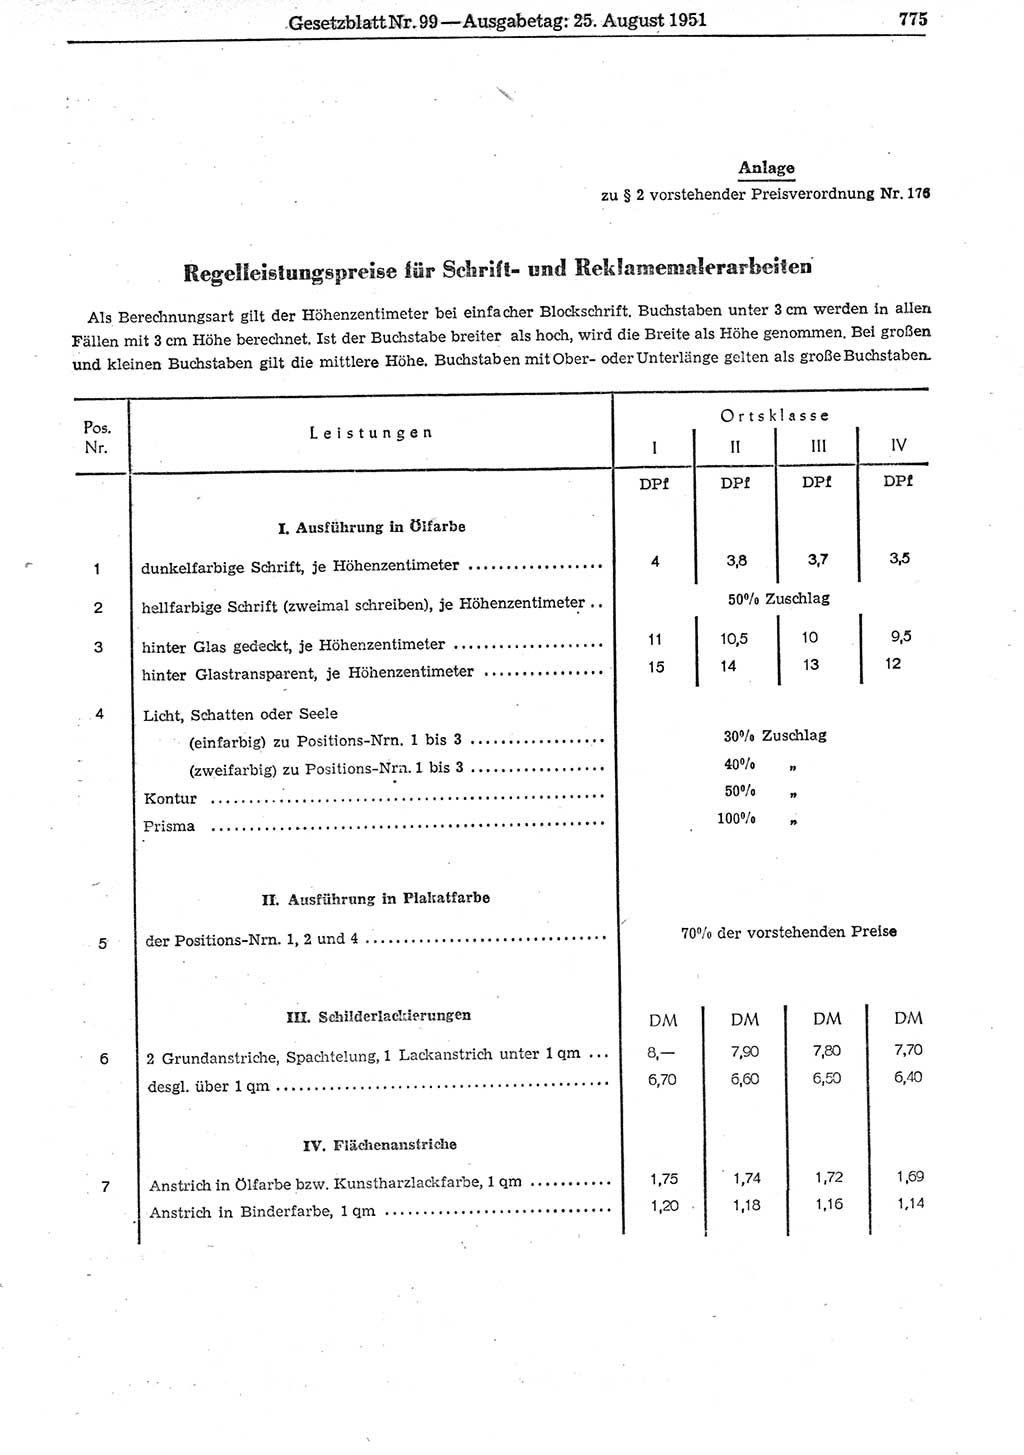 Gesetzblatt (GBl.) der Deutschen Demokratischen Republik (DDR) 1951, Seite 775 (GBl. DDR 1951, S. 775)